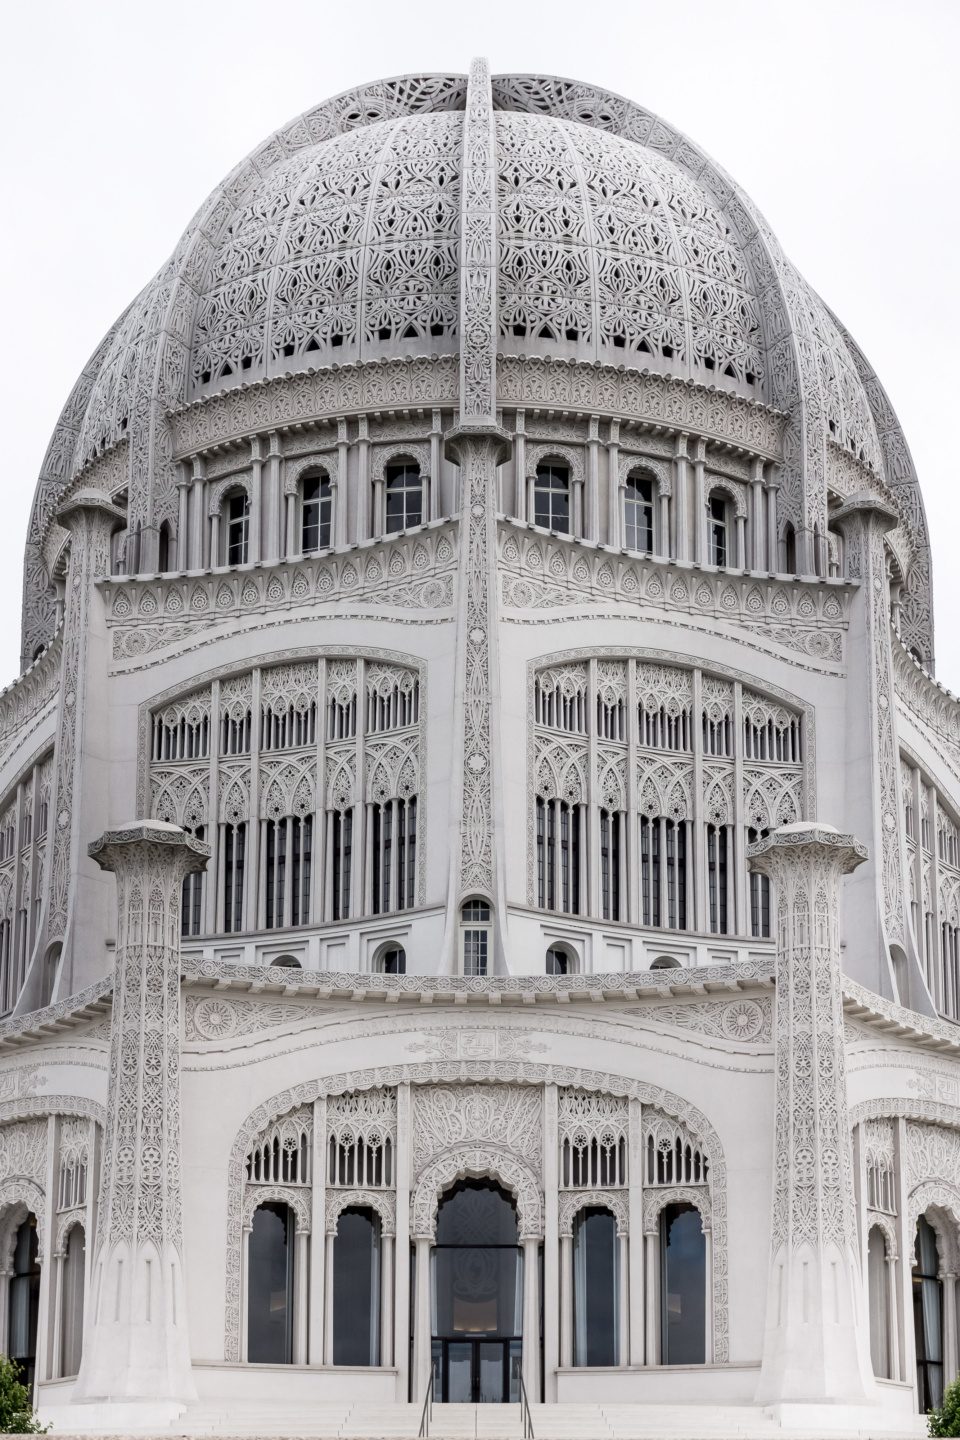 The Bahá'í House of Worship in Wilmette, Illinois